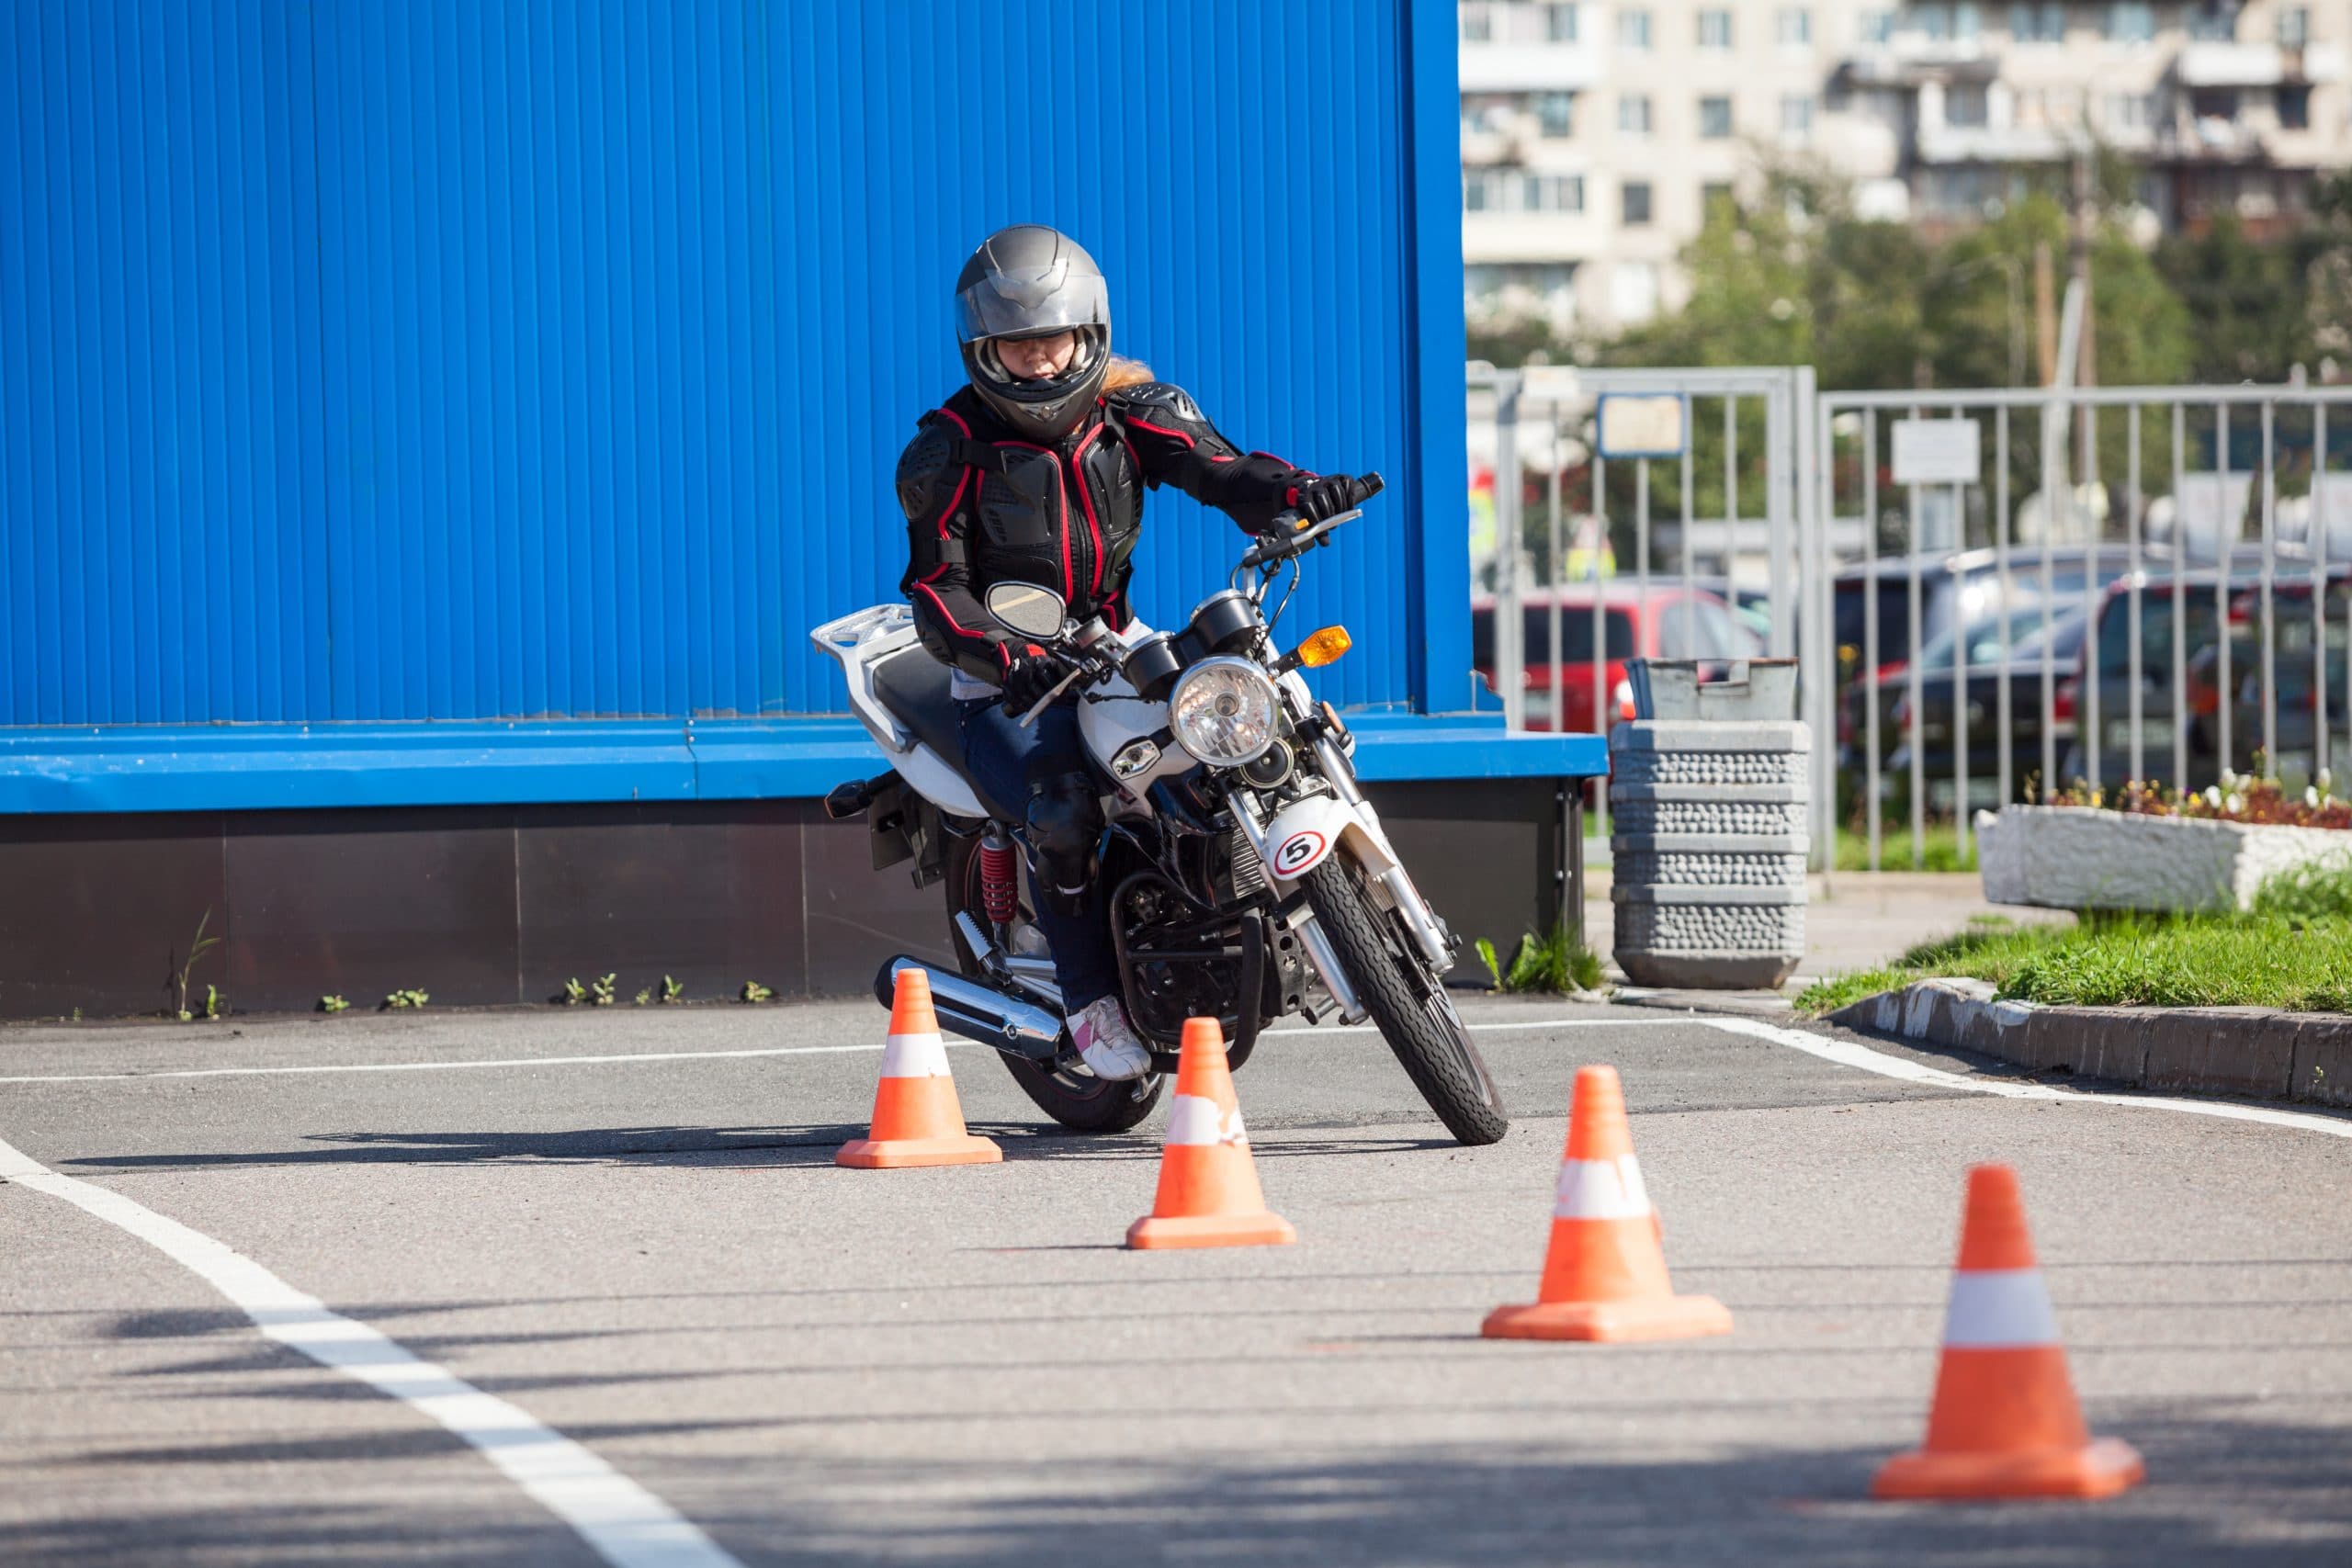 Motocyclistes : une formation offerte gratuitement pour améliorer votre sécurité